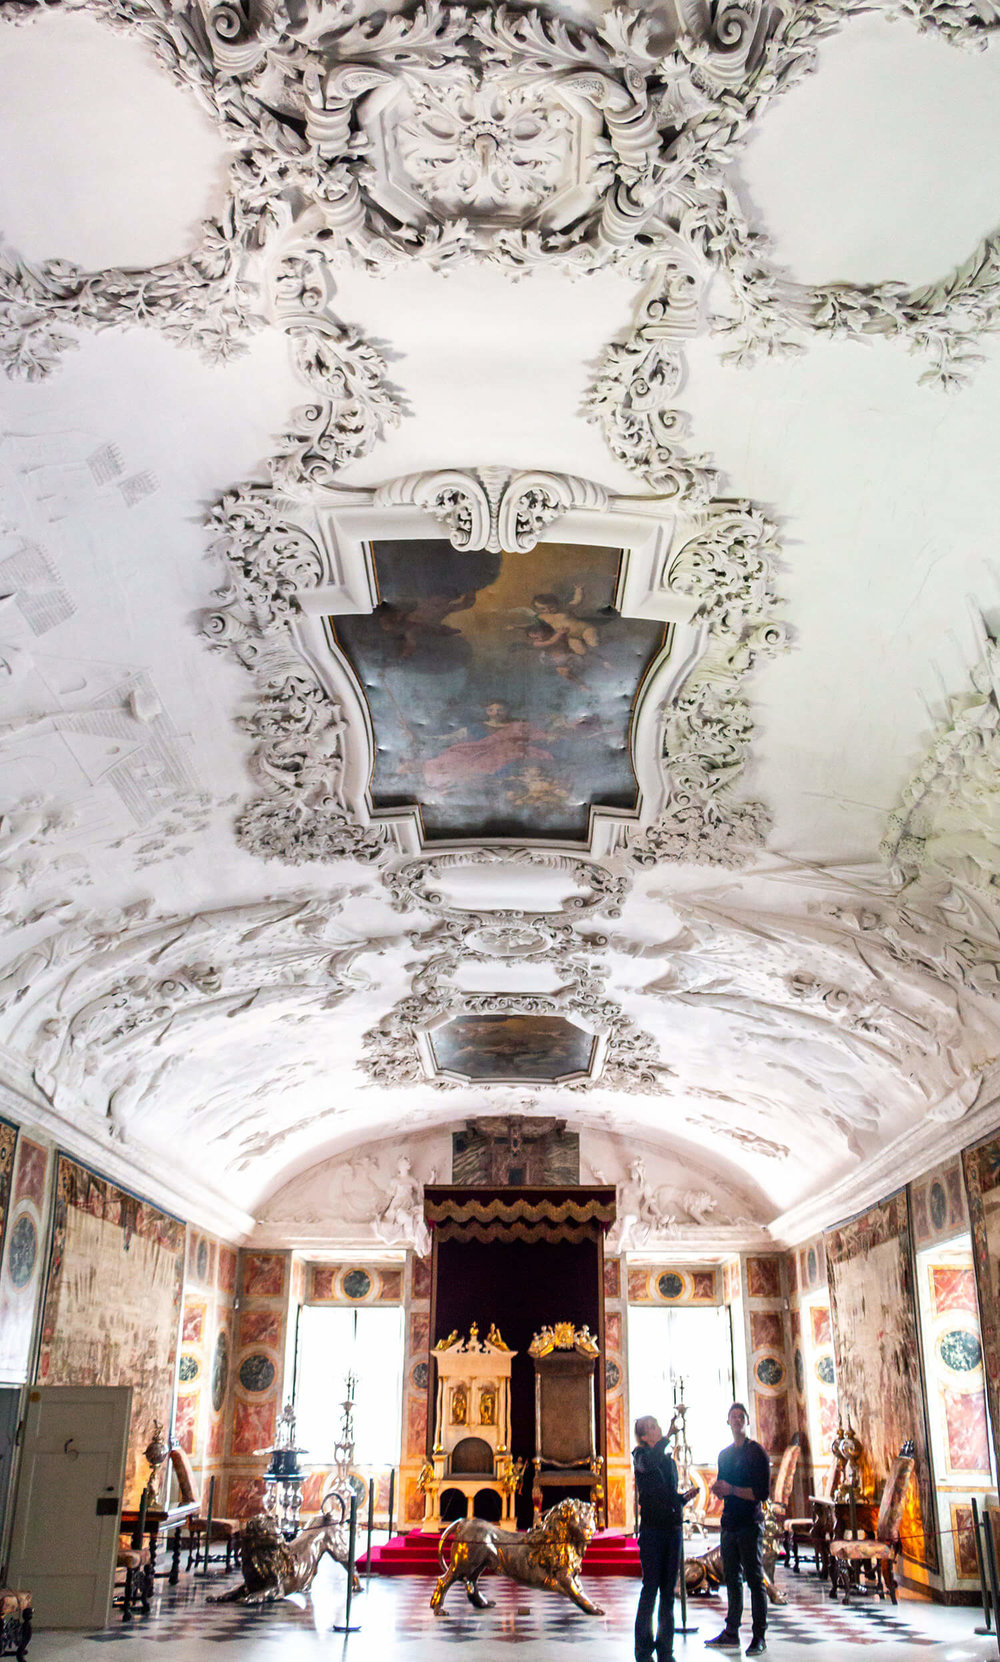 The Rosenborg Castle ceiling